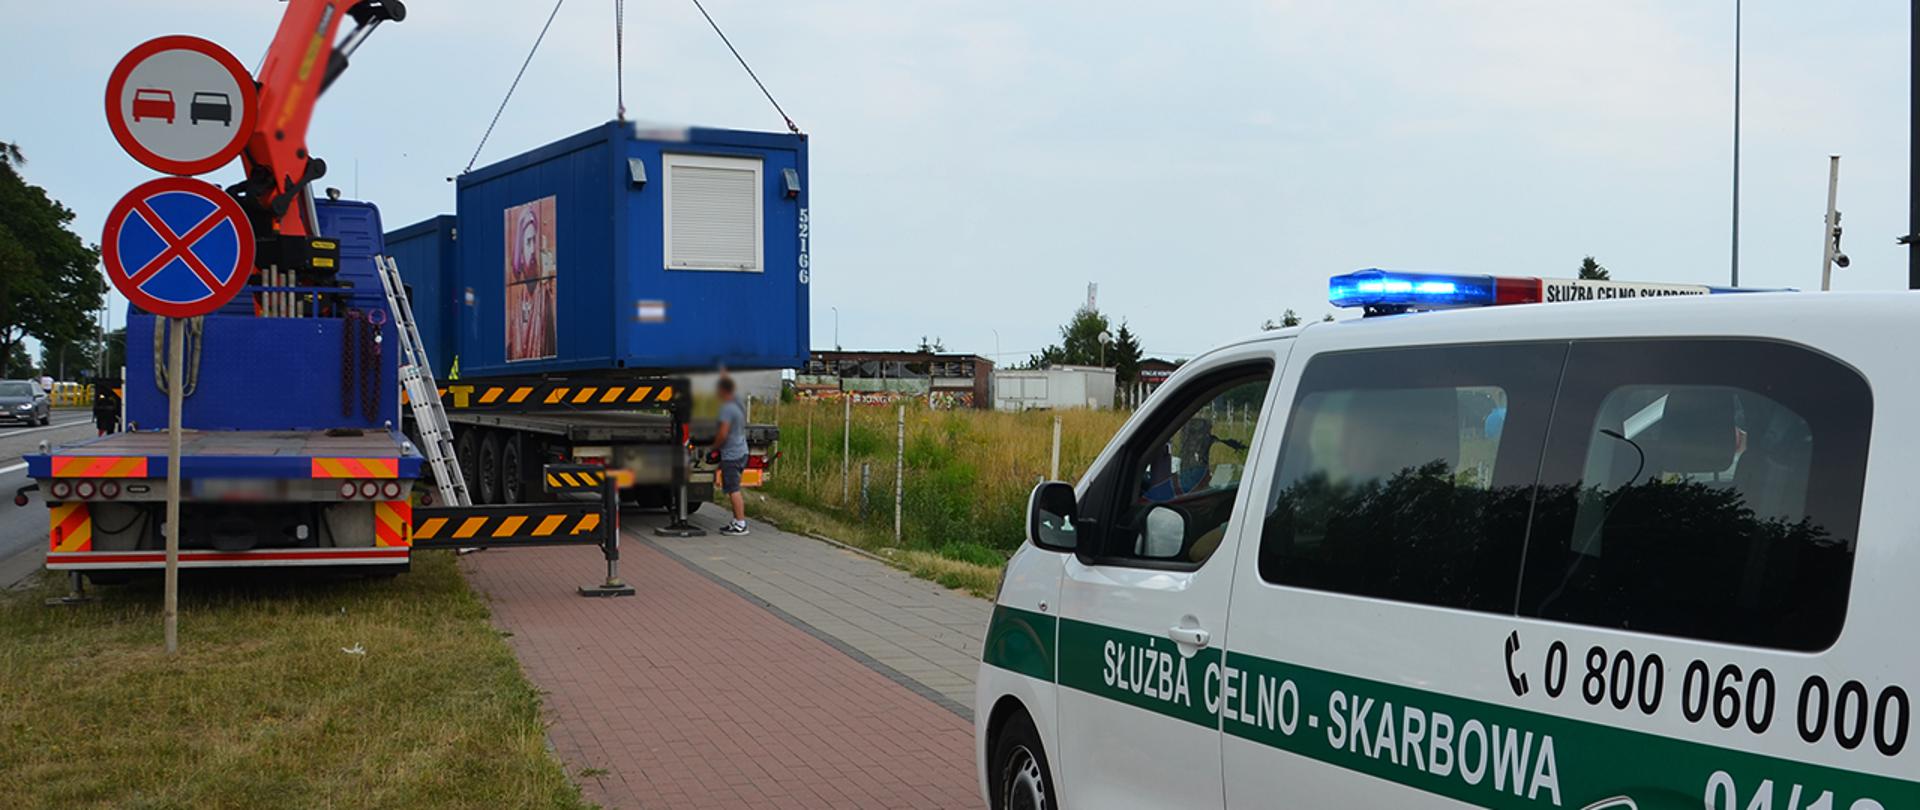 Radiowóz Służby Celno-Skarbowej, dźwig podczas ładowania kontenera na naczepę samochodu ciężarowego.